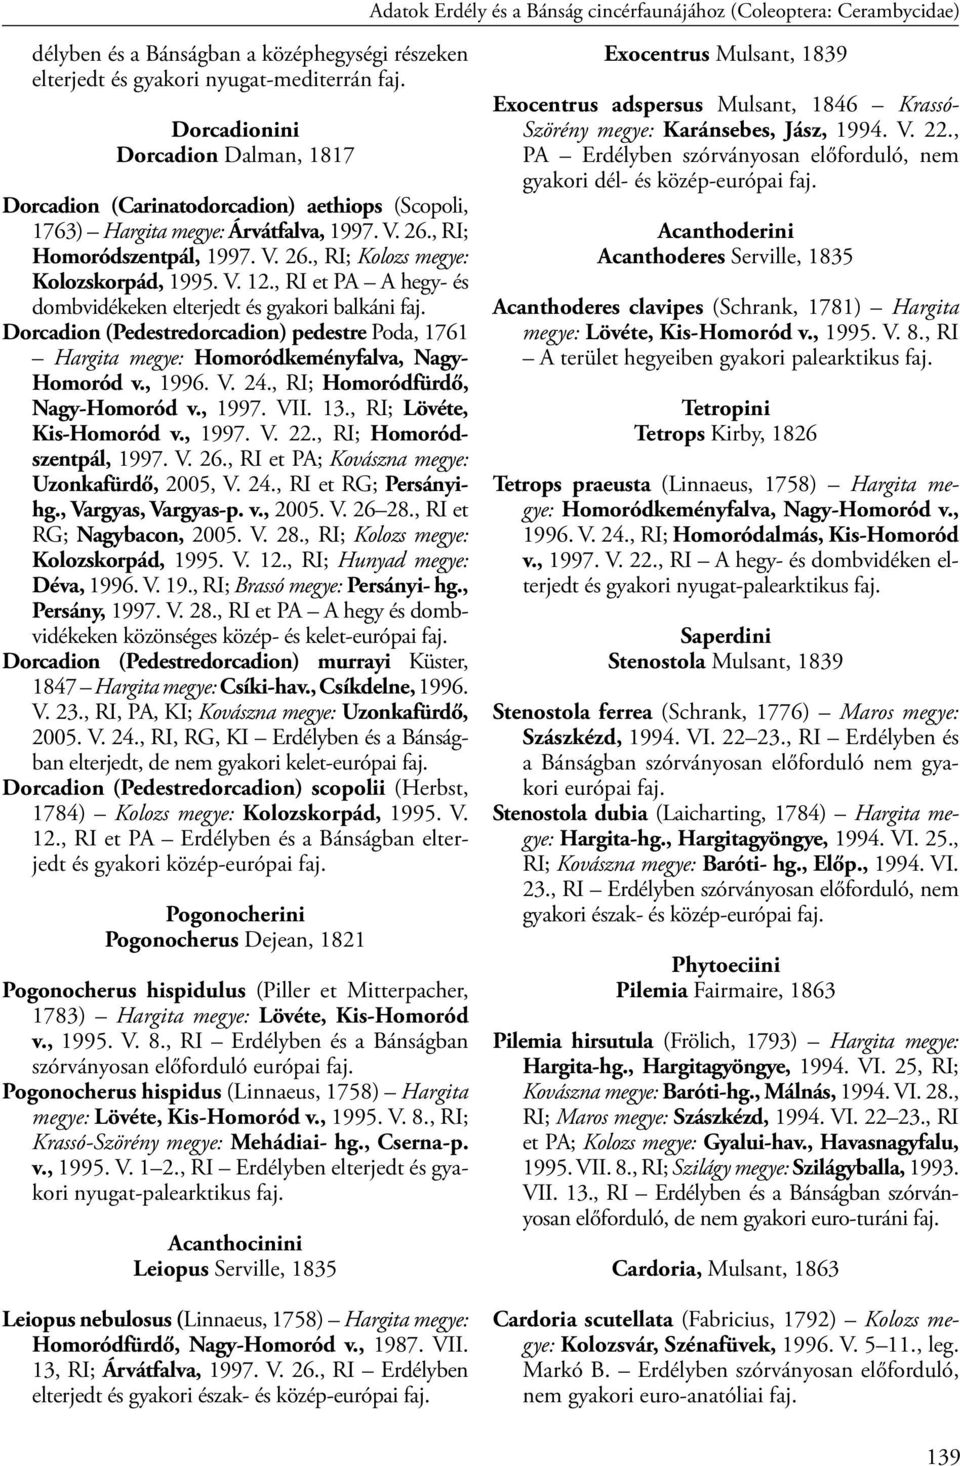 V. 12., RI et PA A hegy- és dombvidékeken elterjedt és gyakori balkáni faj. Dorcadion (Pedestredorcadion) pedestre Poda, 1761 Hargita megye: Homoródkeményfalva, Nagy- Homoród v., 1996. V. 24.